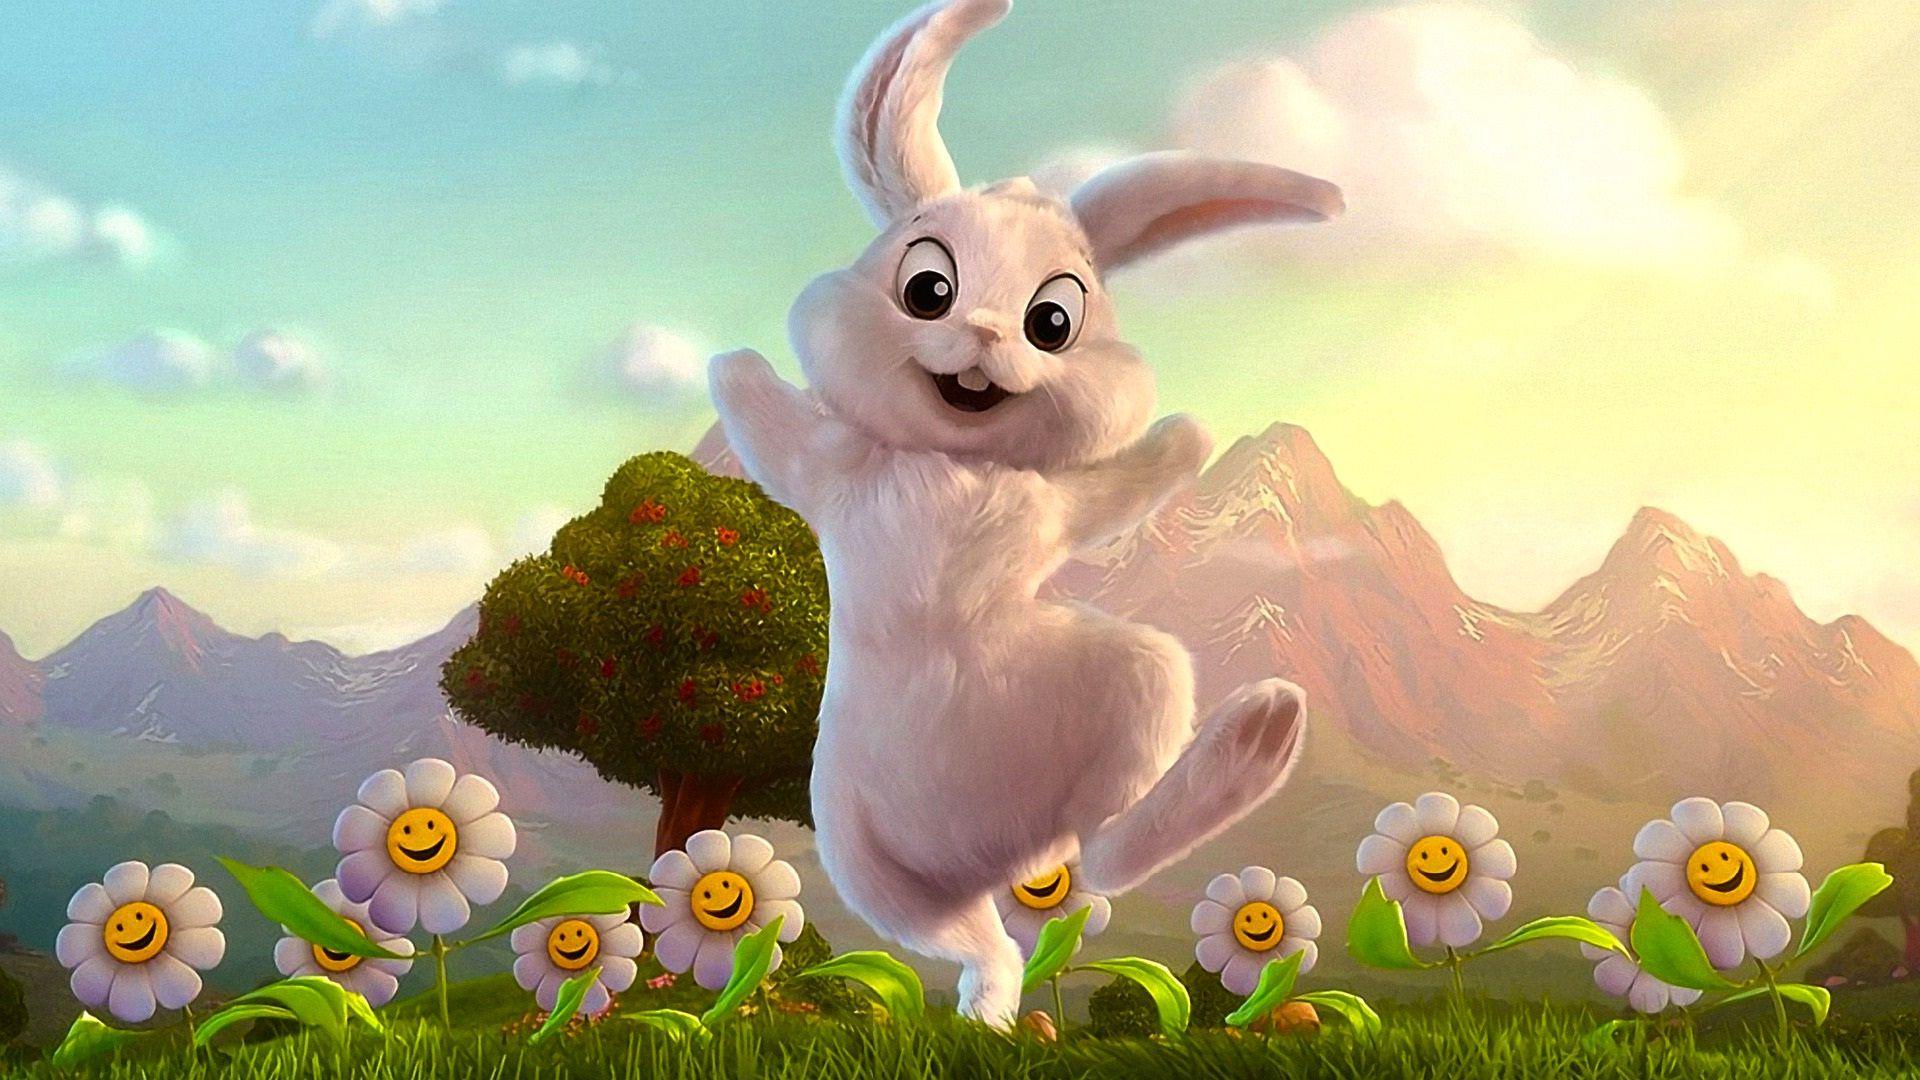 Comedy rabbit cartoon funny wallpaper HD wallpaperNew HD wallpaper